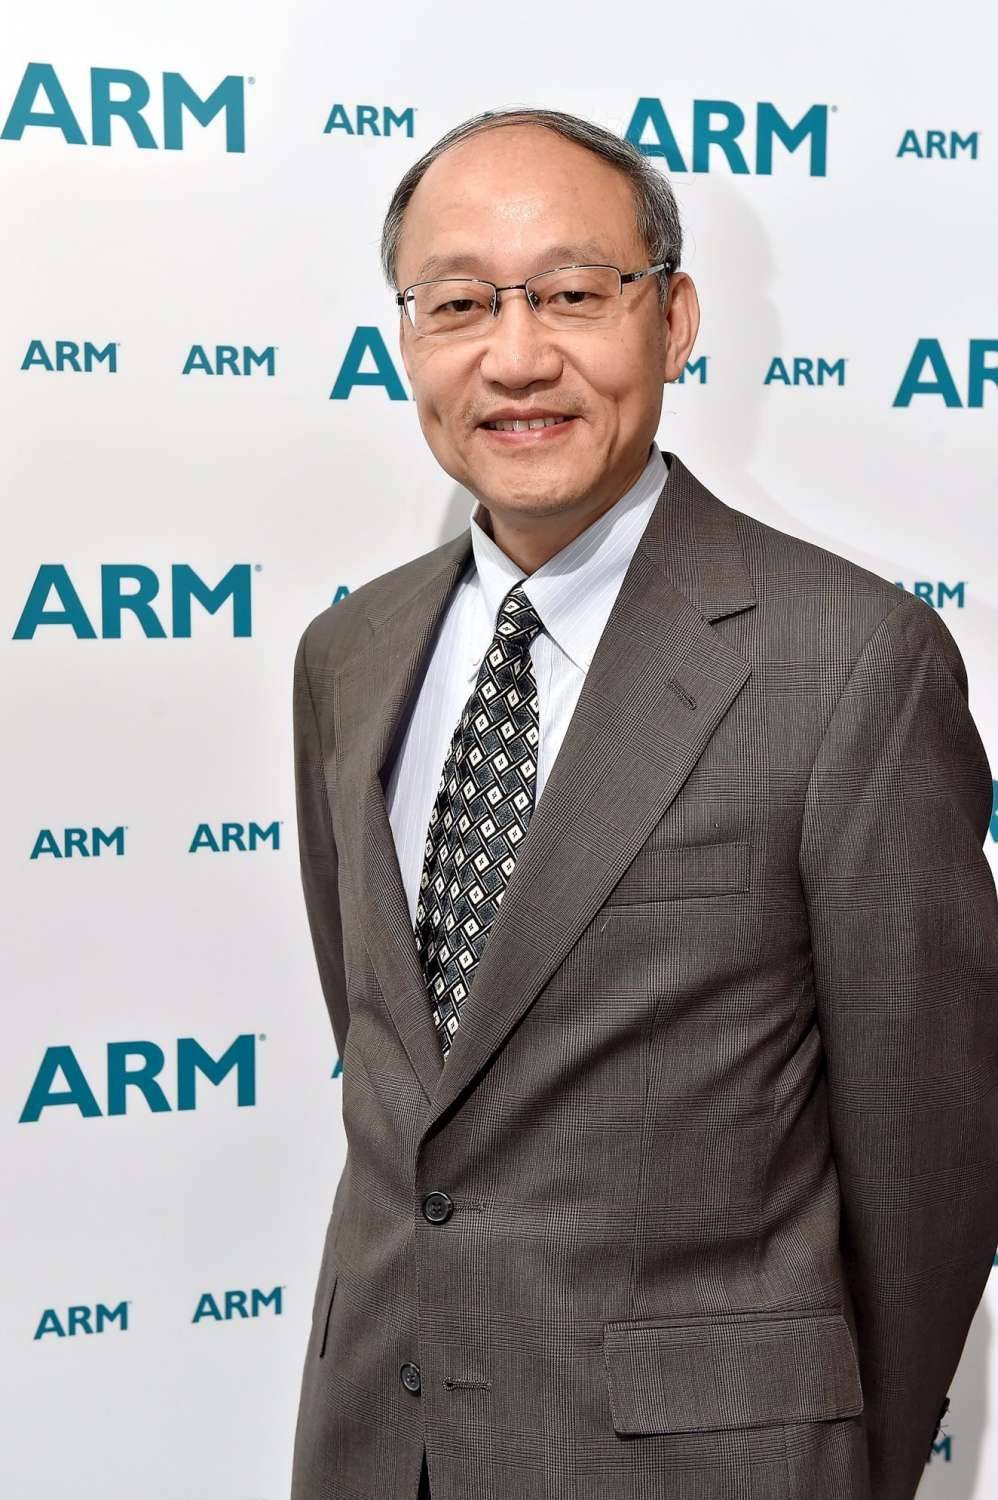 ARM全球創新暨投資副總裁謝弘輝博士。邊信聯科技/提供